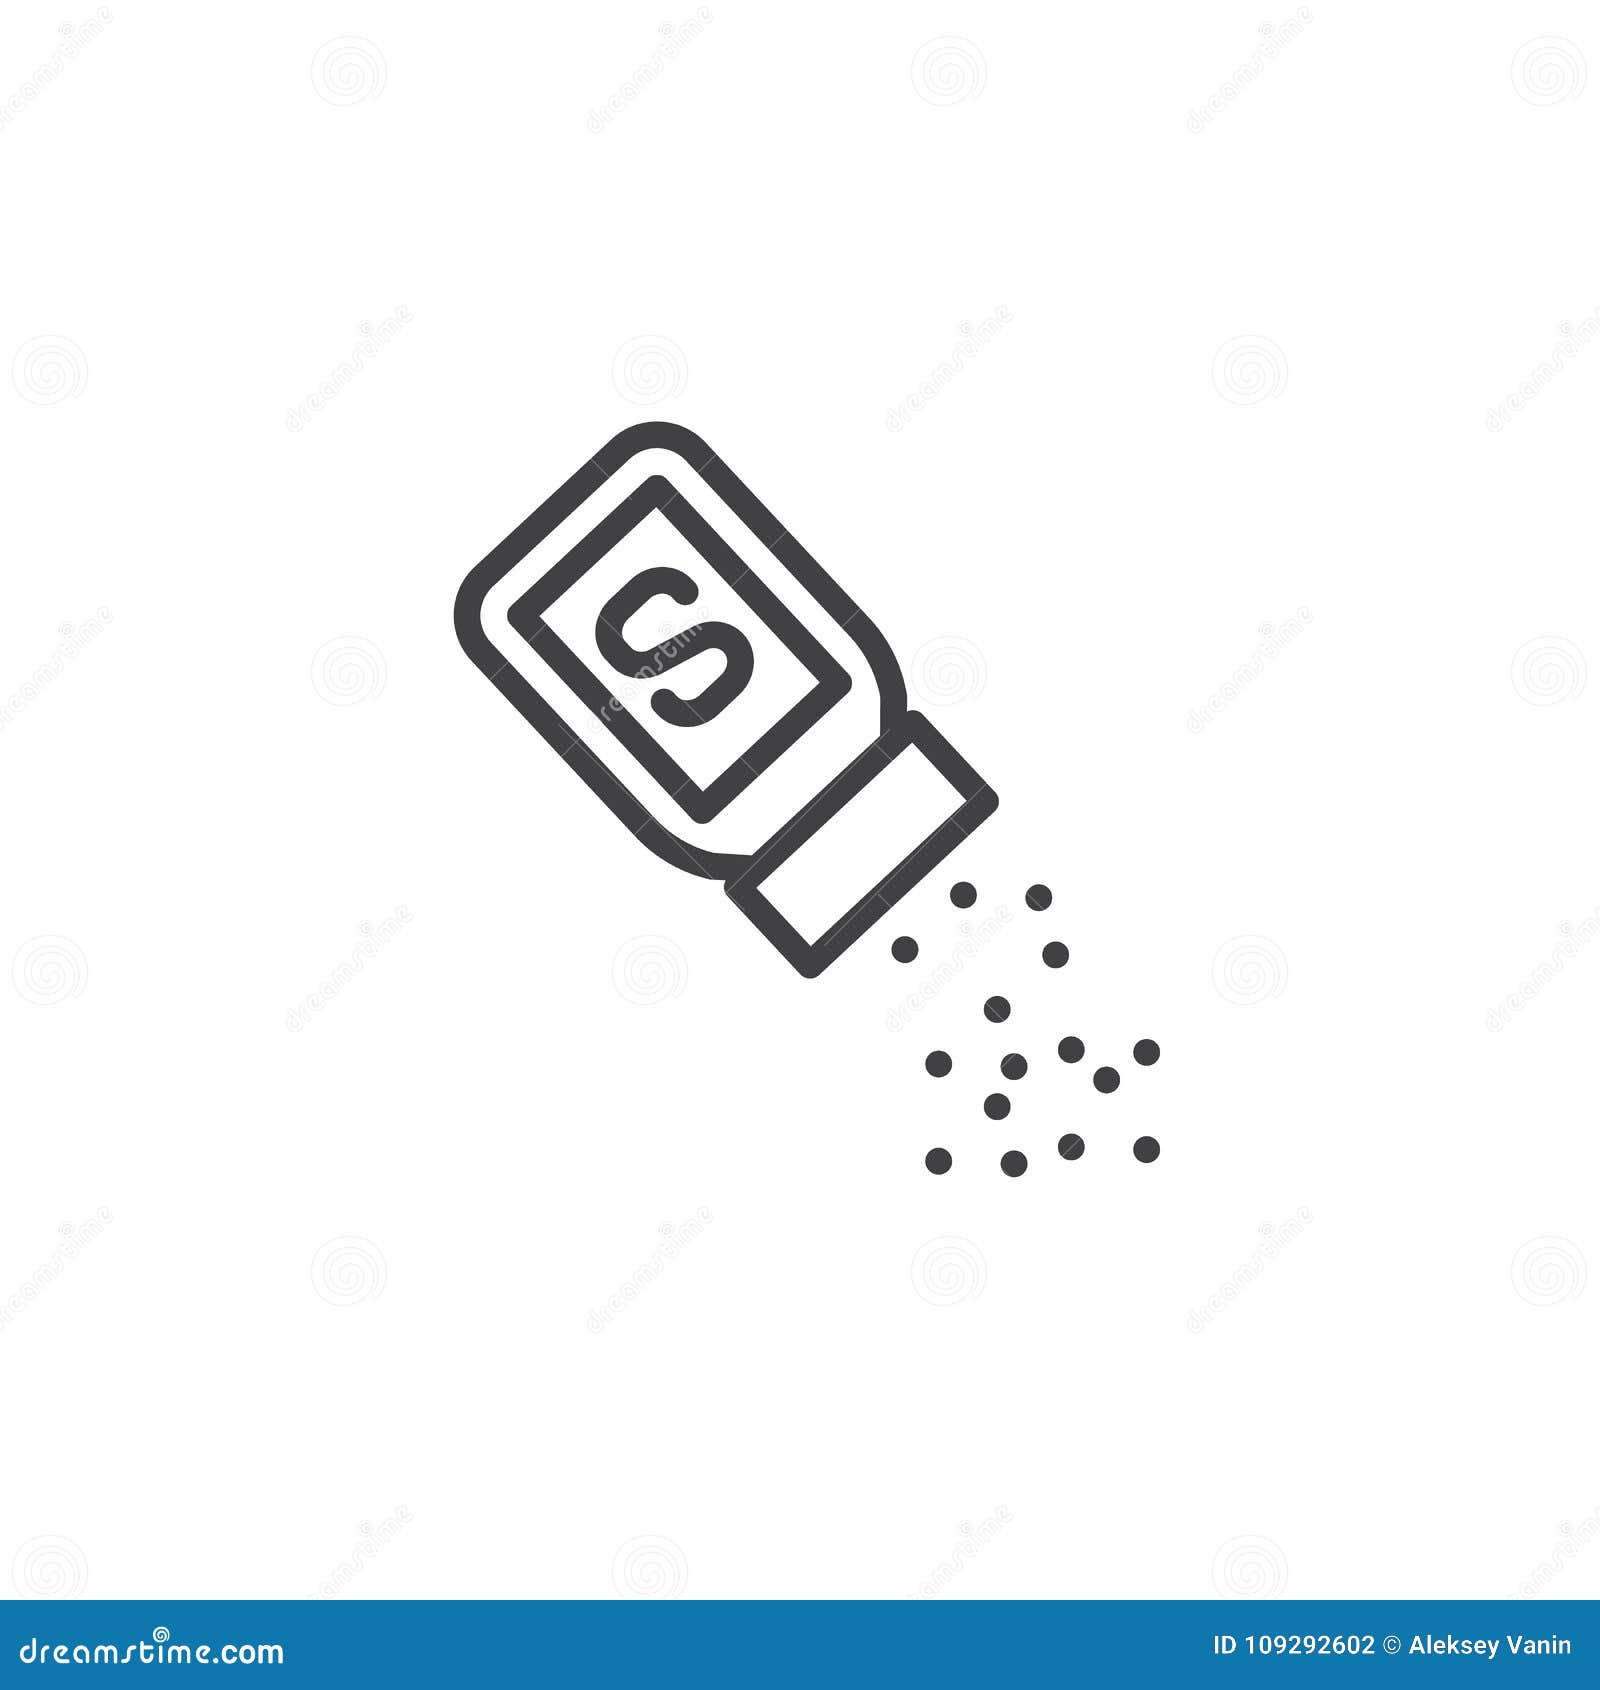 Salt shaker line icon stock vector. Illustration of stroke - 109292602